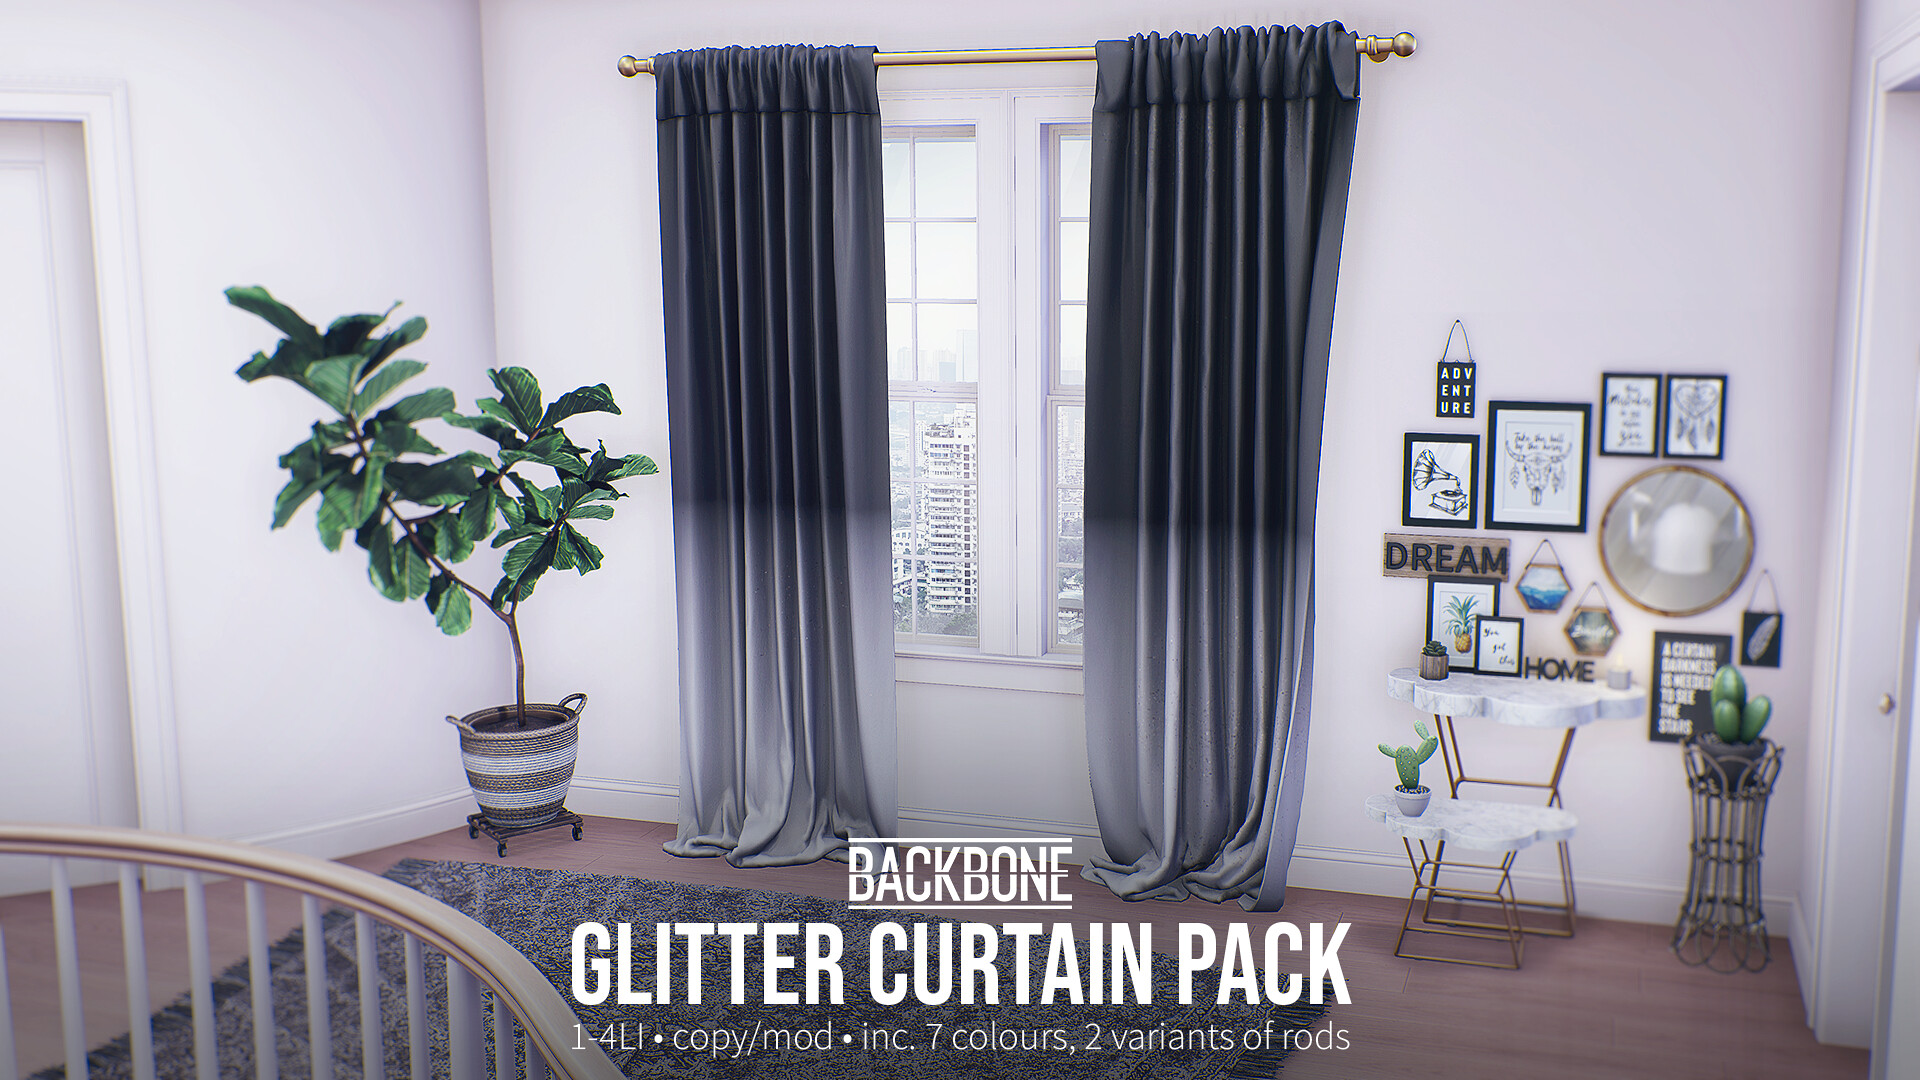 BackBone – Glitter Curtain Pack